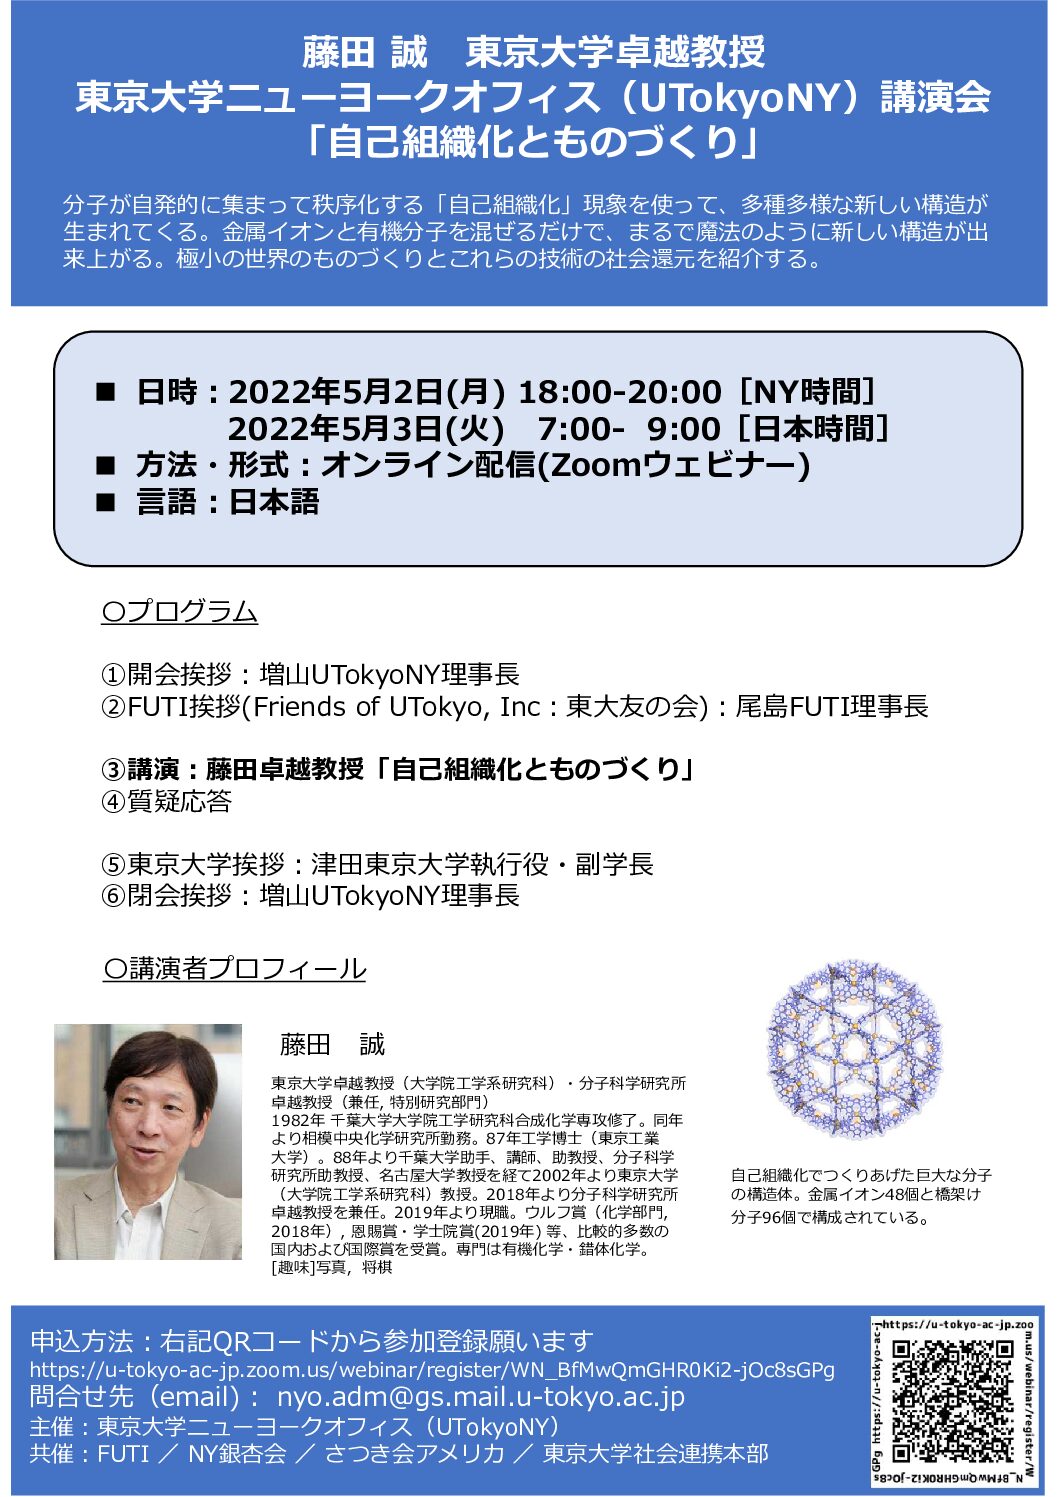 藤田 誠　東京大学卓越教授 講演会「自己組織化とものづくり」開催のお知らせ